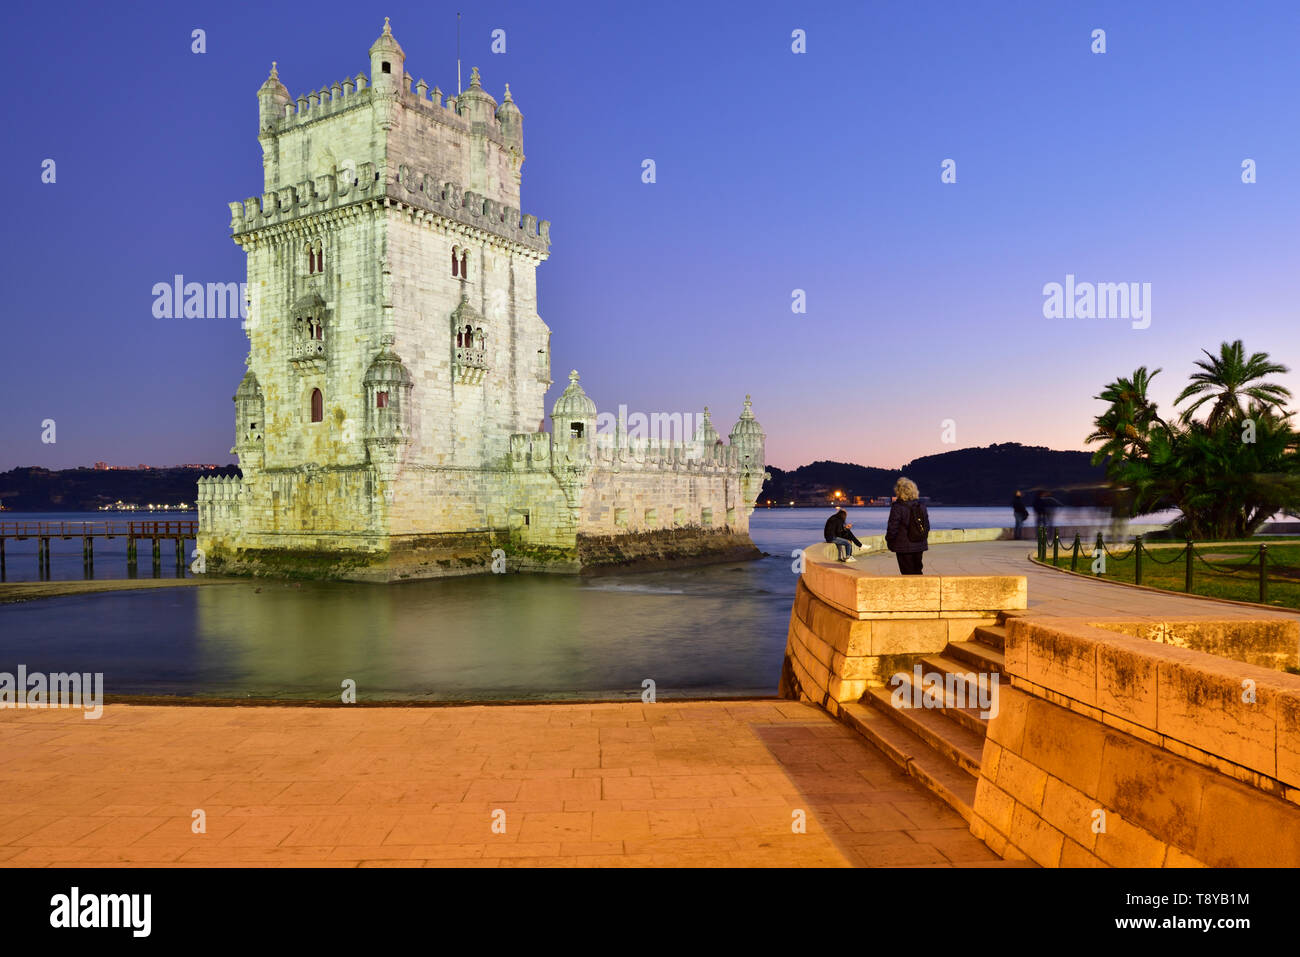 Torre de Belém (Turm von Belém), in den Fluss Tejo, ein UNESCO-Weltkulturerbe im 16. Jahrhundert in Portugiesisch manuelinischen Stil erbaut in der Dämmerung. Es Stockfoto